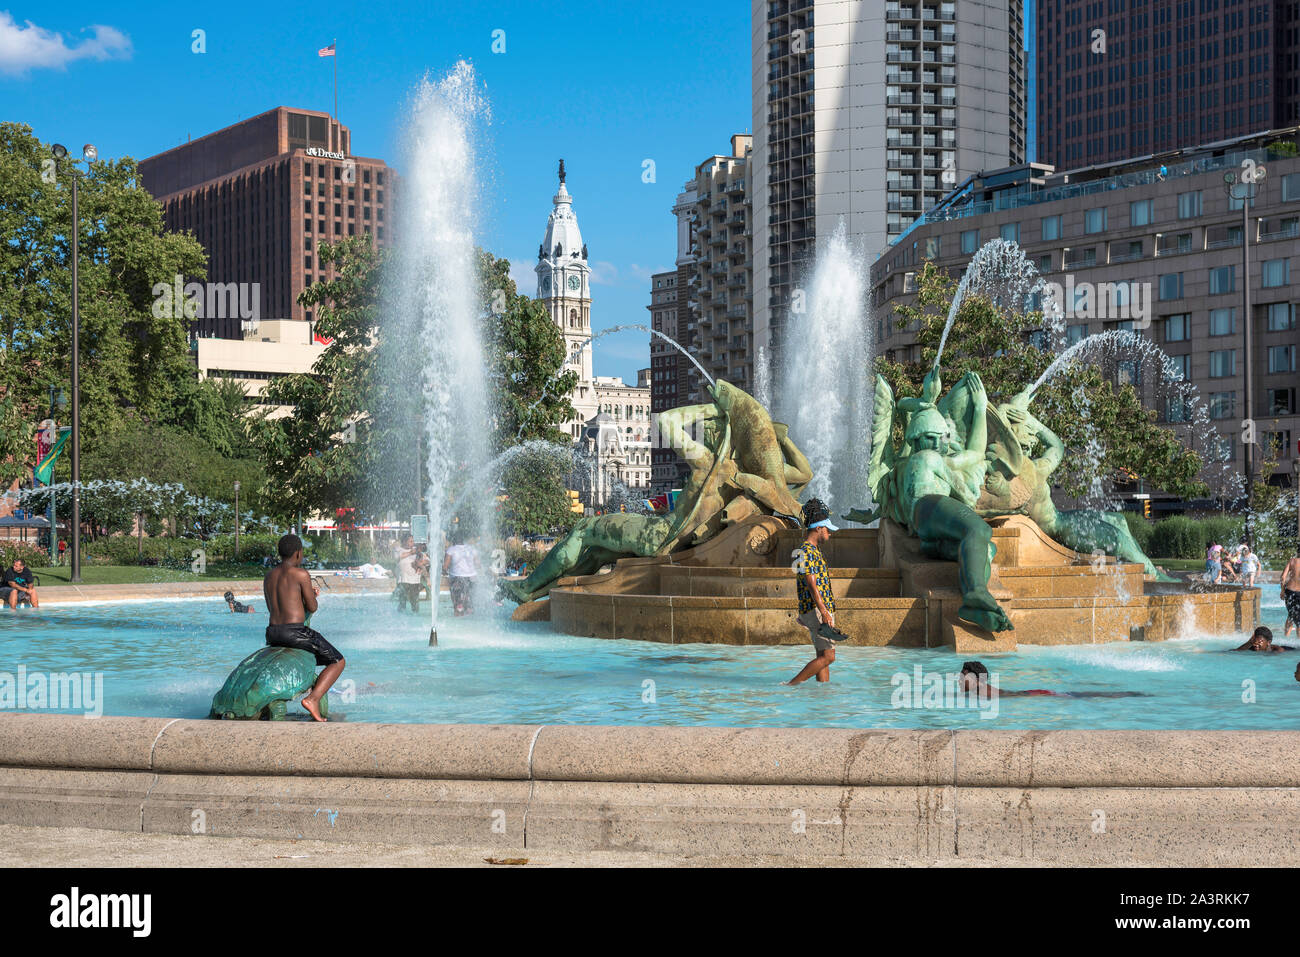 Vue d'été USA ville, de jeunes qui jouent dans le Logan Square fontaine sur un jour d'été dans le centre de Philadelphie, Pennsylvanie, PA, USA. Banque D'Images